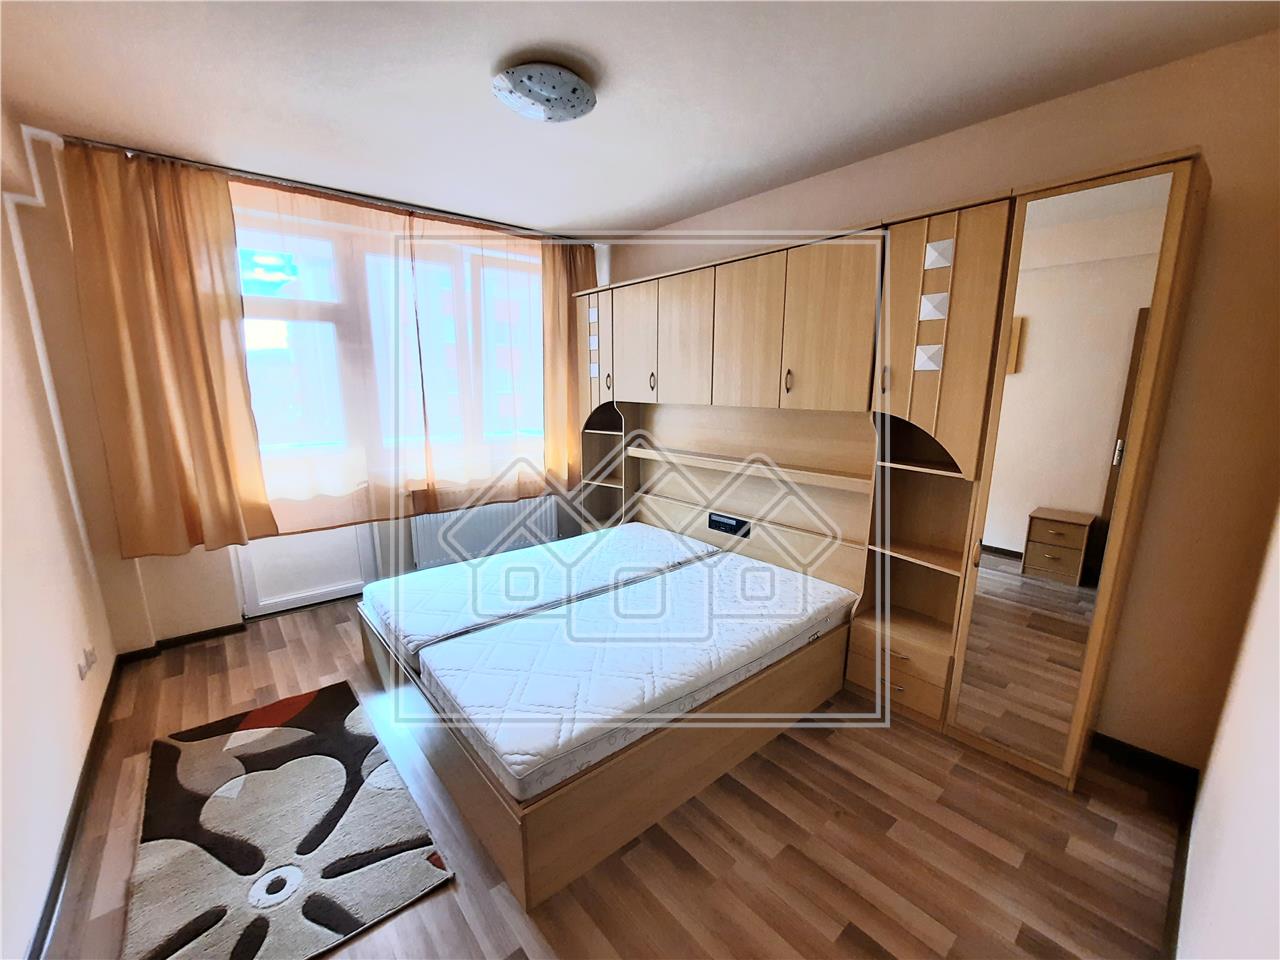 Apartment for rent in Alba Iulia - 3 rooms - Central area